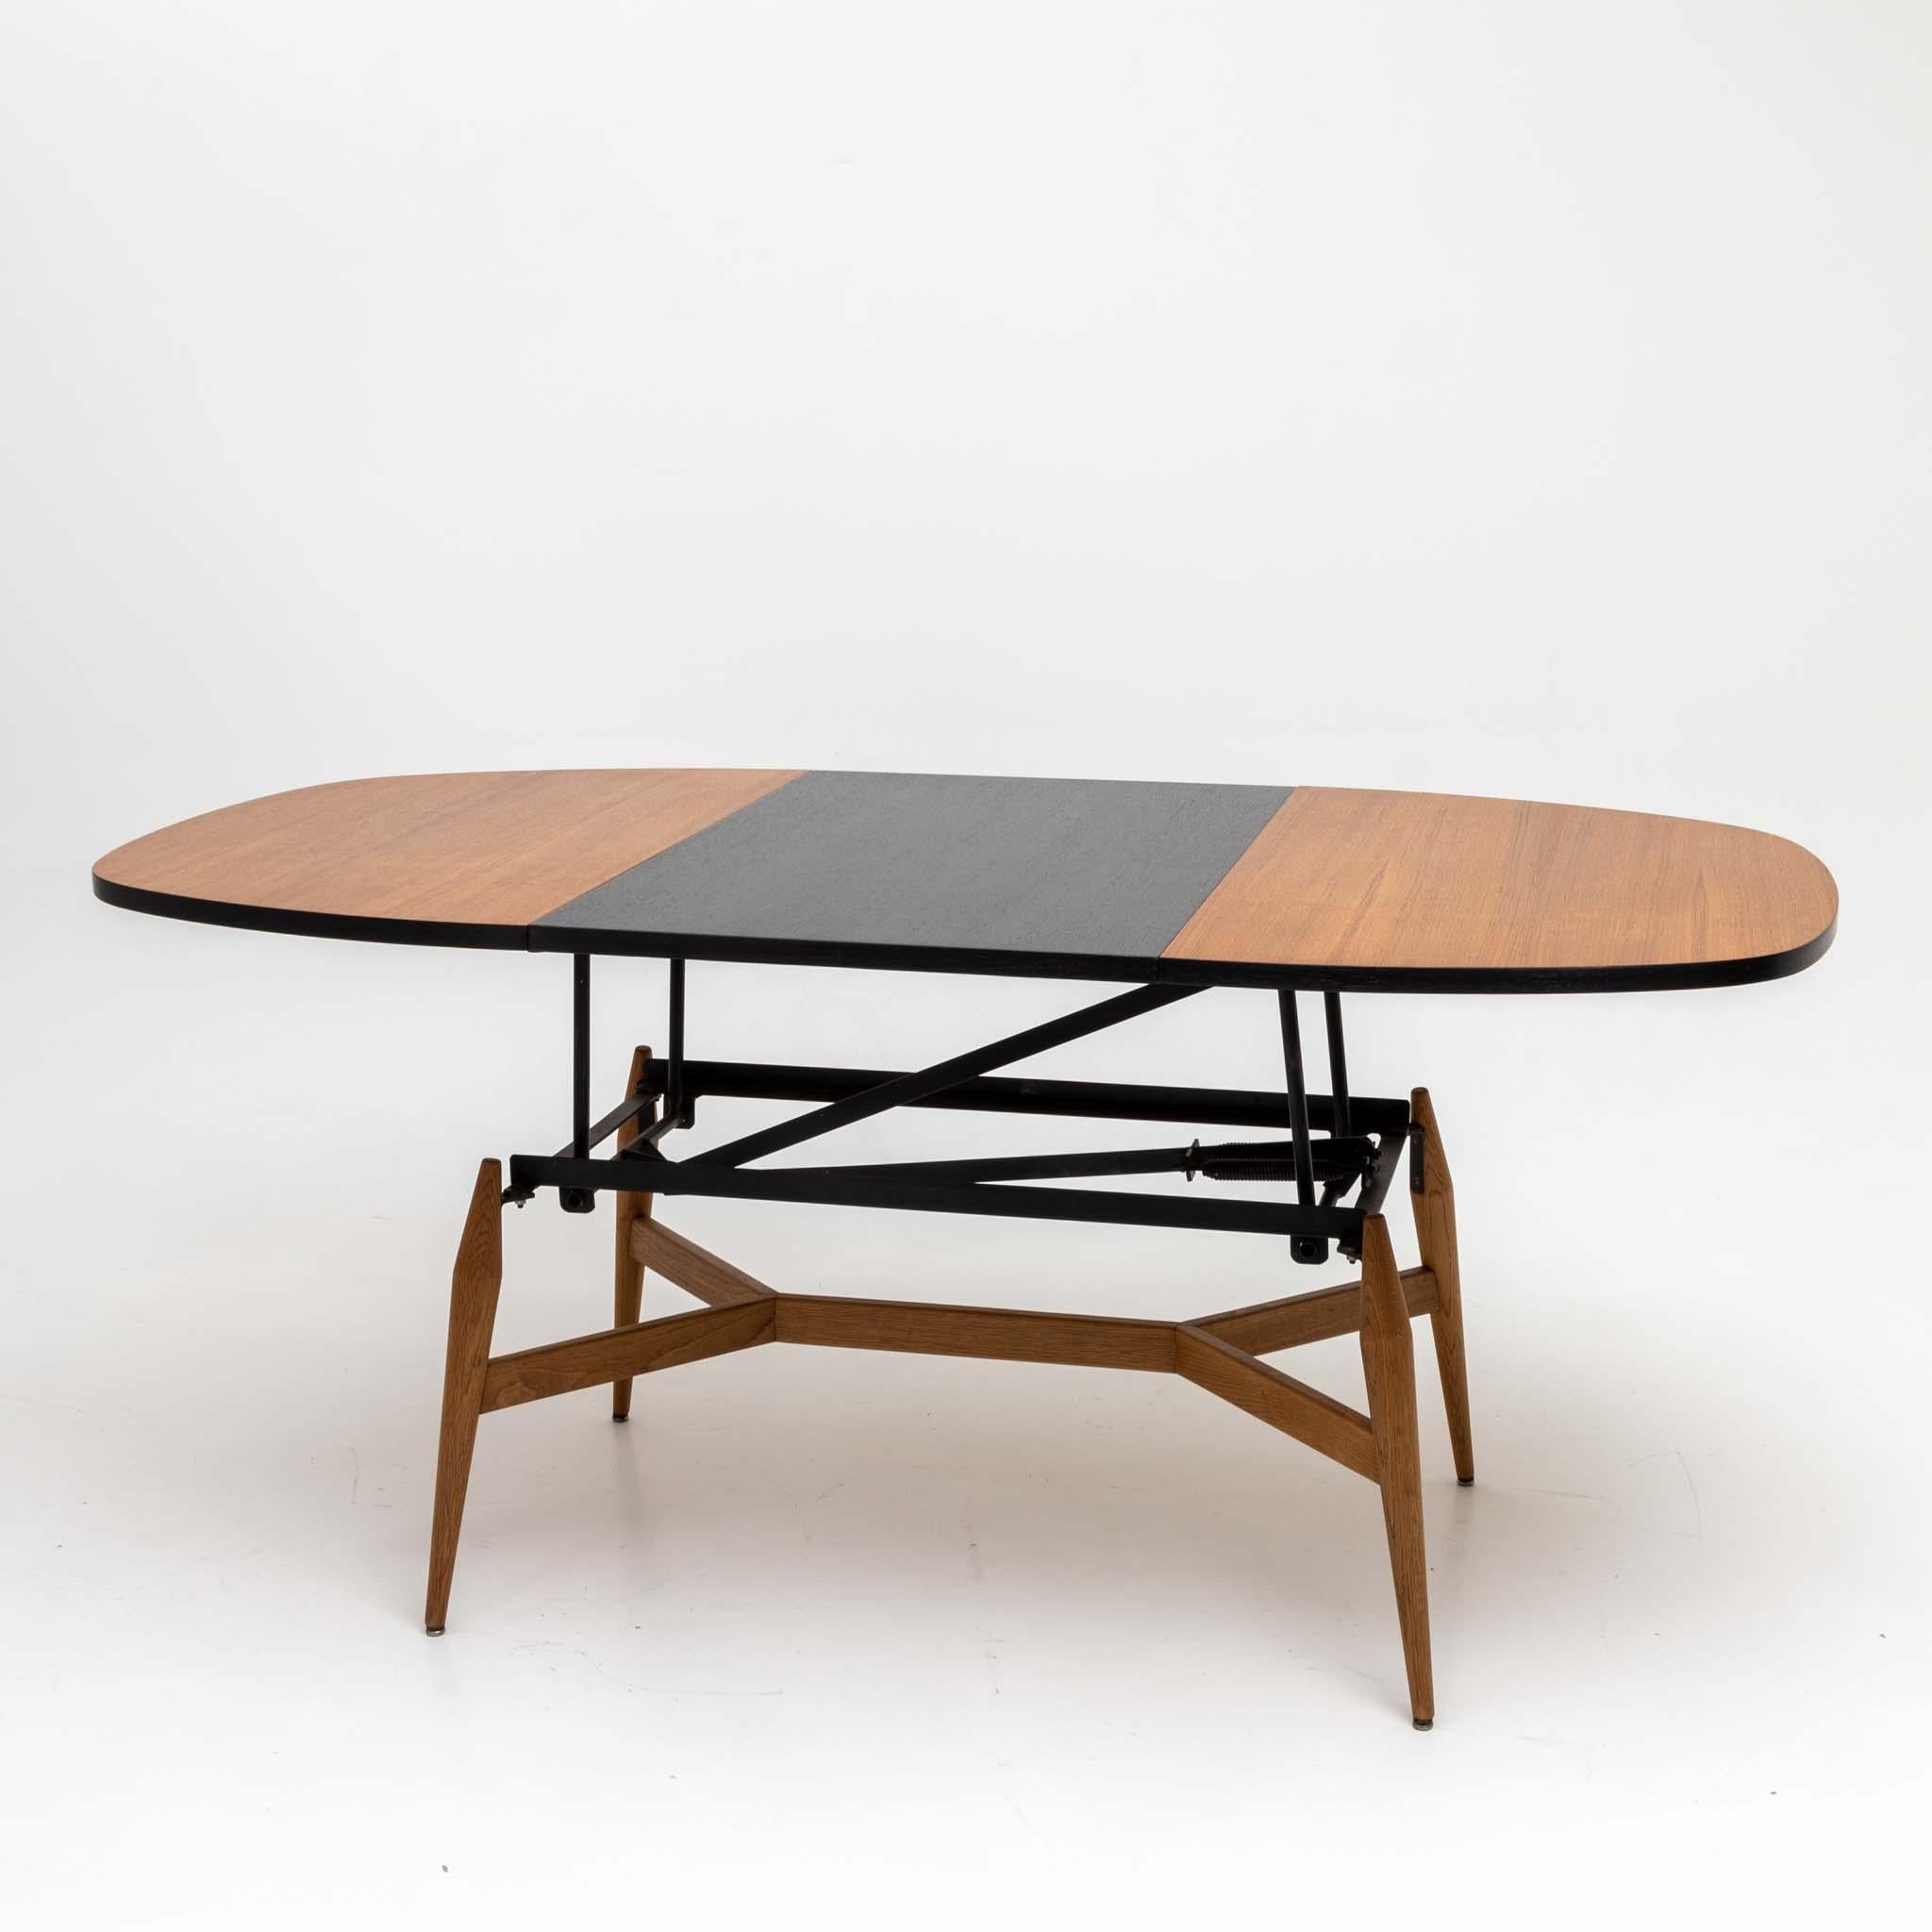 Table basse avec plateau ovale, pieds coniques et entretoise en x. En allongeant le plateau de la table et en insérant une pièce centrale (noire), elle peut être transformée en table à manger. Dimensions en extension (HxLxP) : 73,5 x 166 x 85 cm.